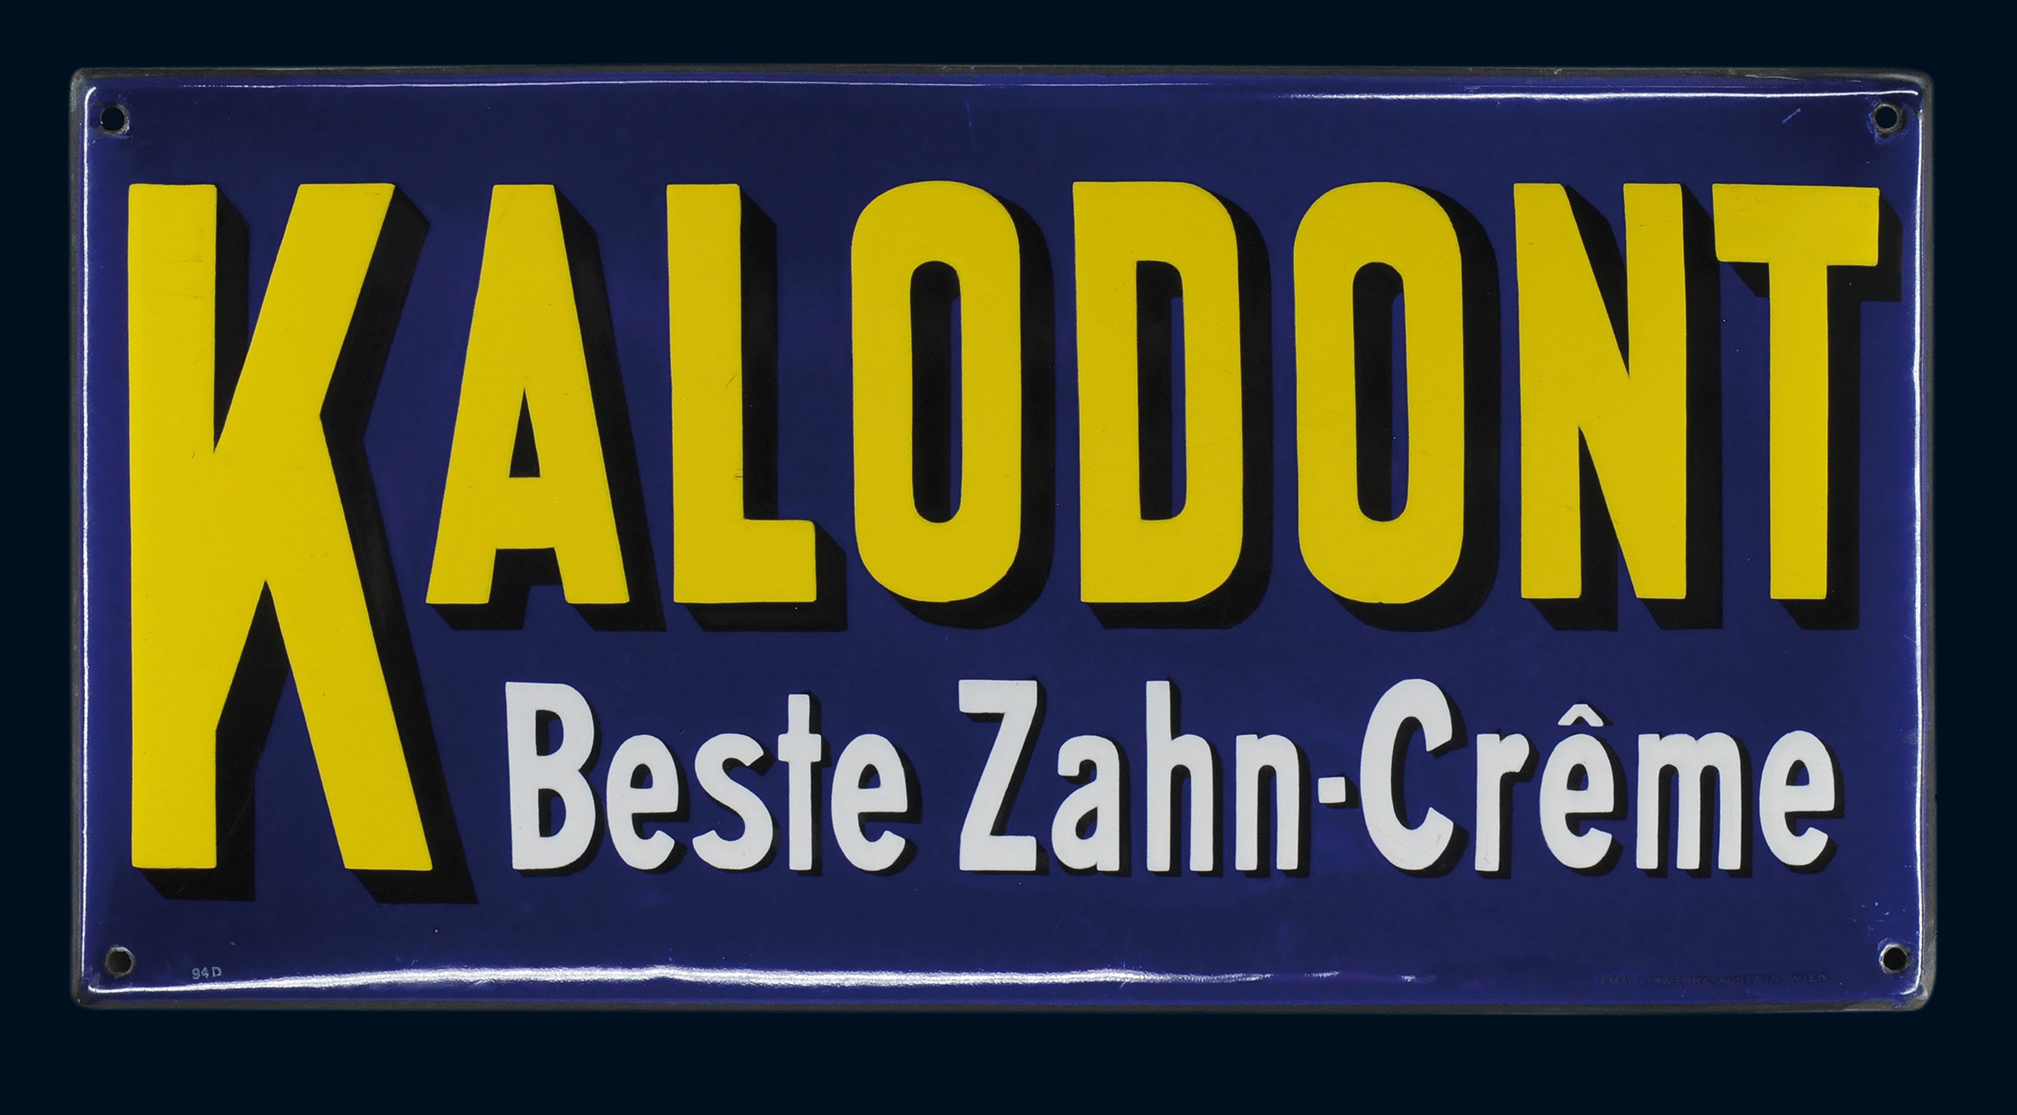 Kalodont Beste Zahn-Crême